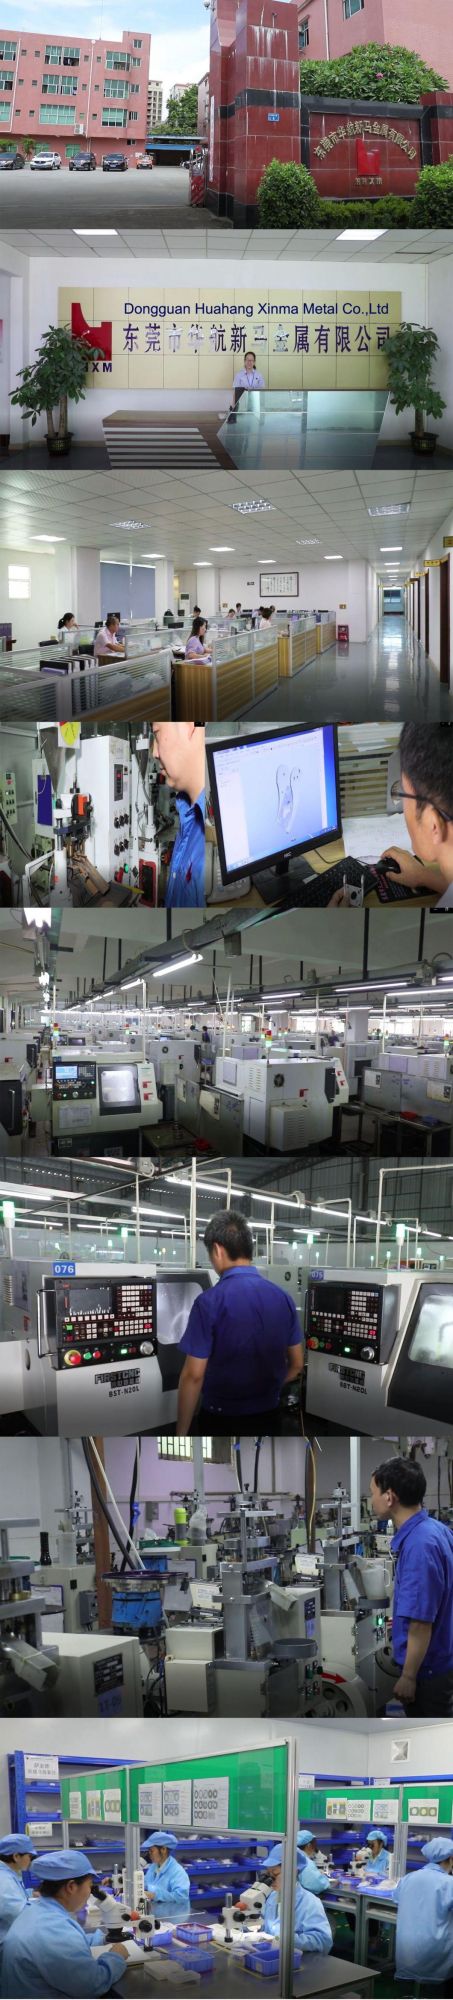 Custom Mass Production Cheap Copper CNC Machining Turning Copper Parts in Dongguan Guangdong